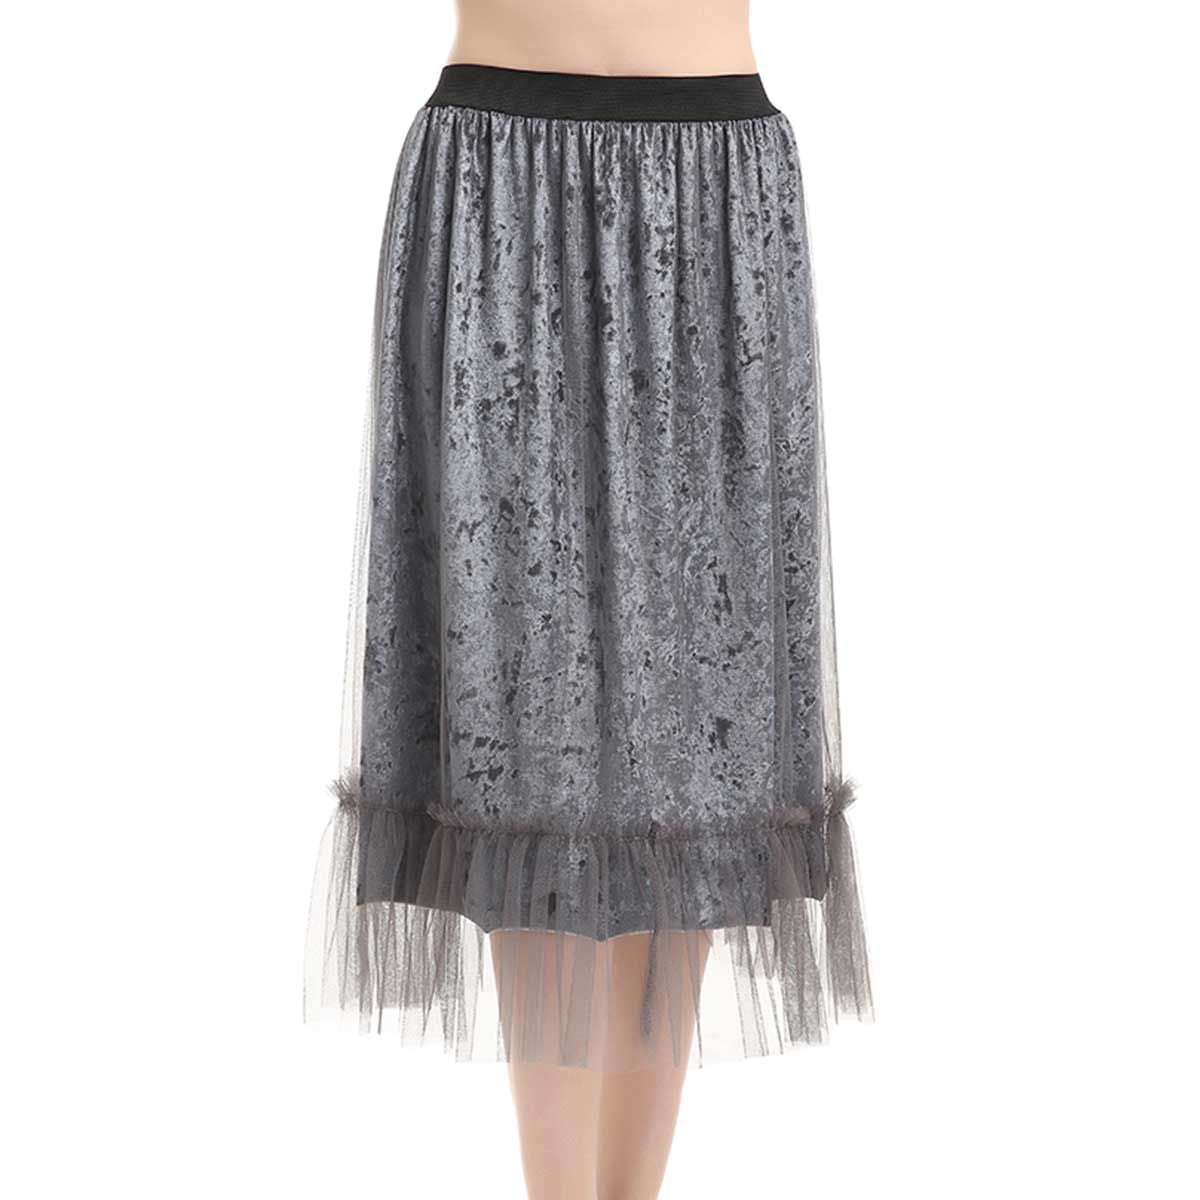 Crushed Velvet Suspension Skirt - One Size